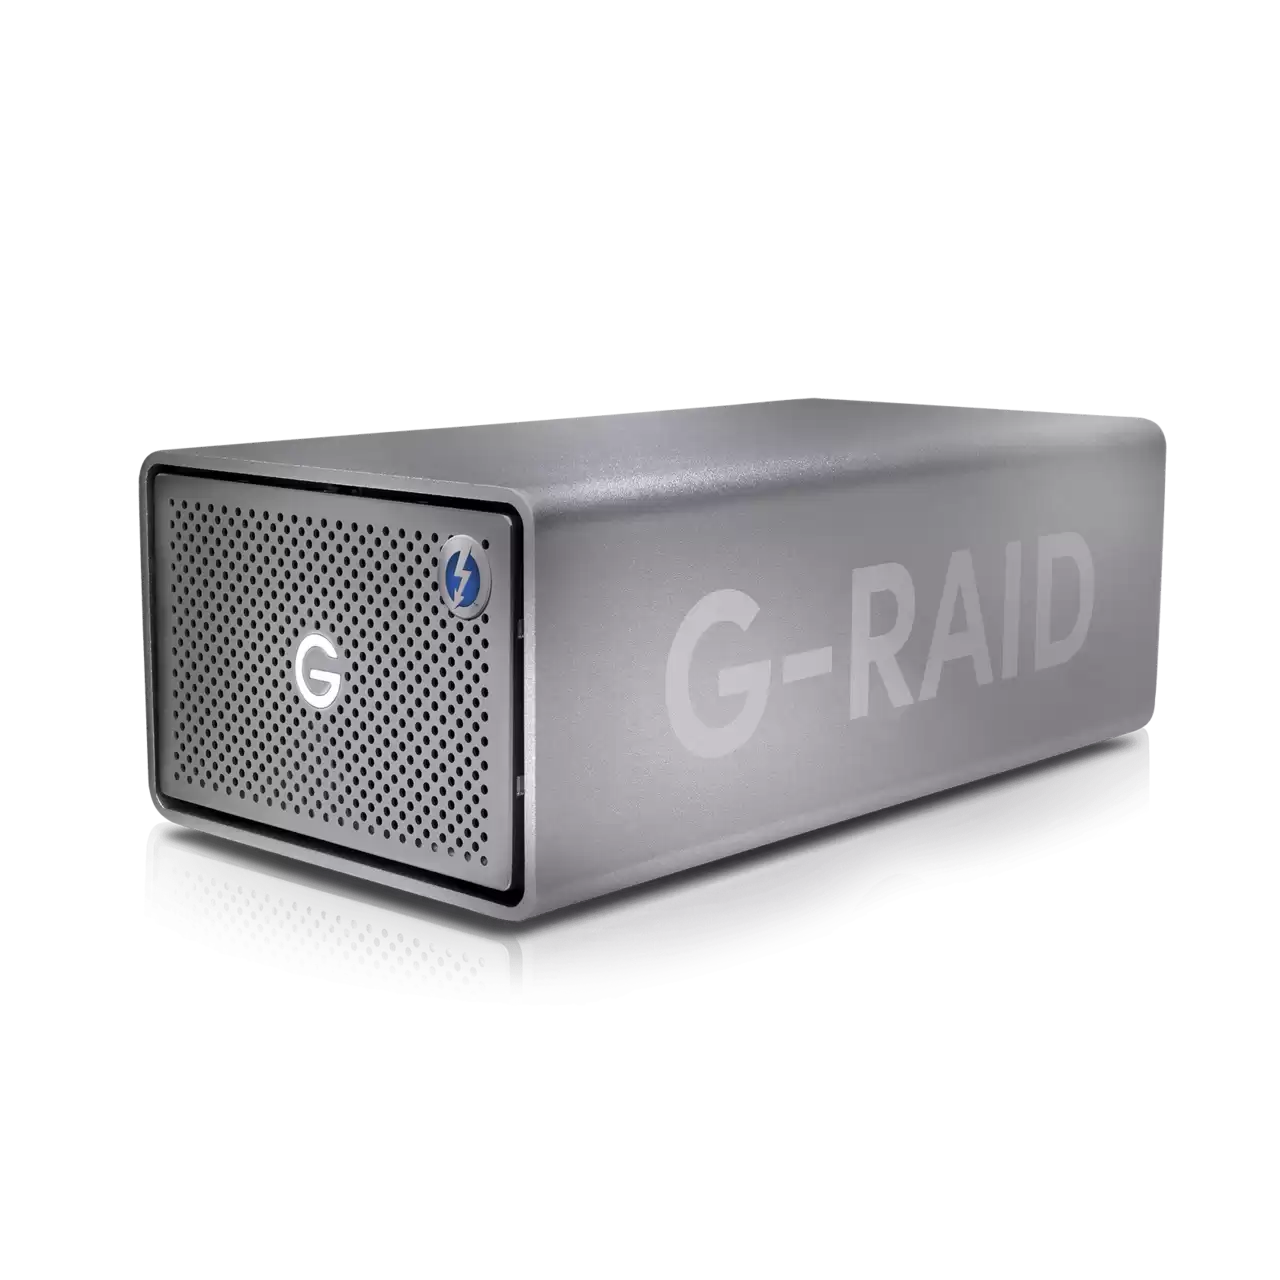 G-RAID 2 12TB USB 